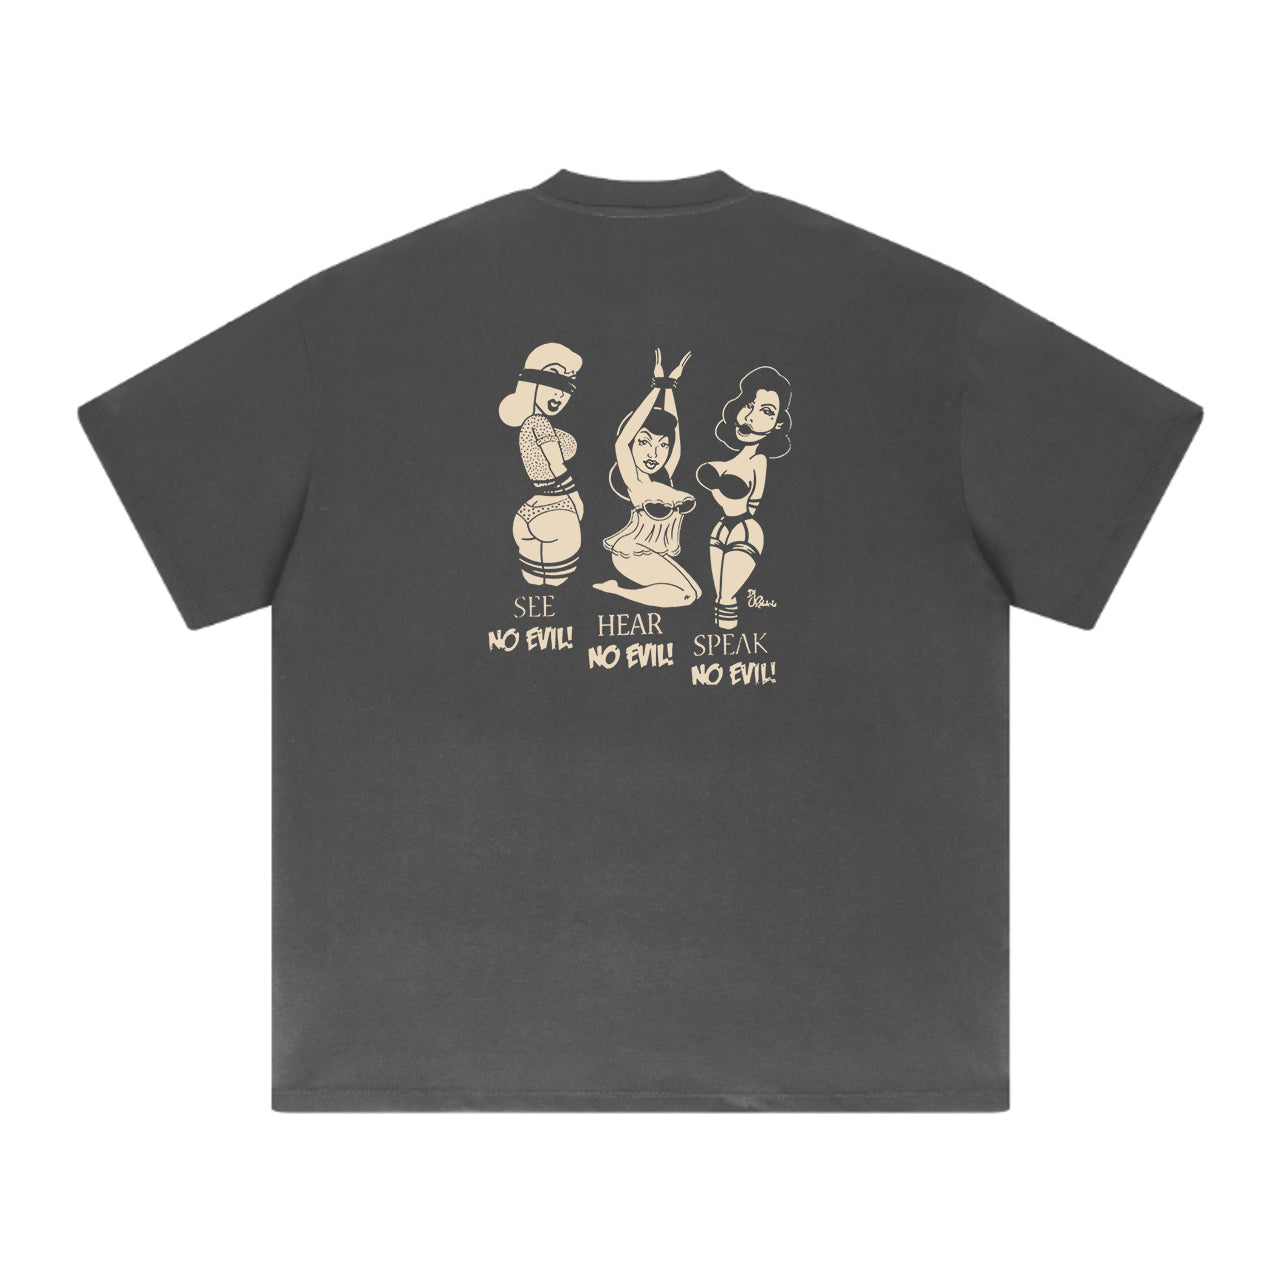 No Evil Men's Cotton T-shirt 320g